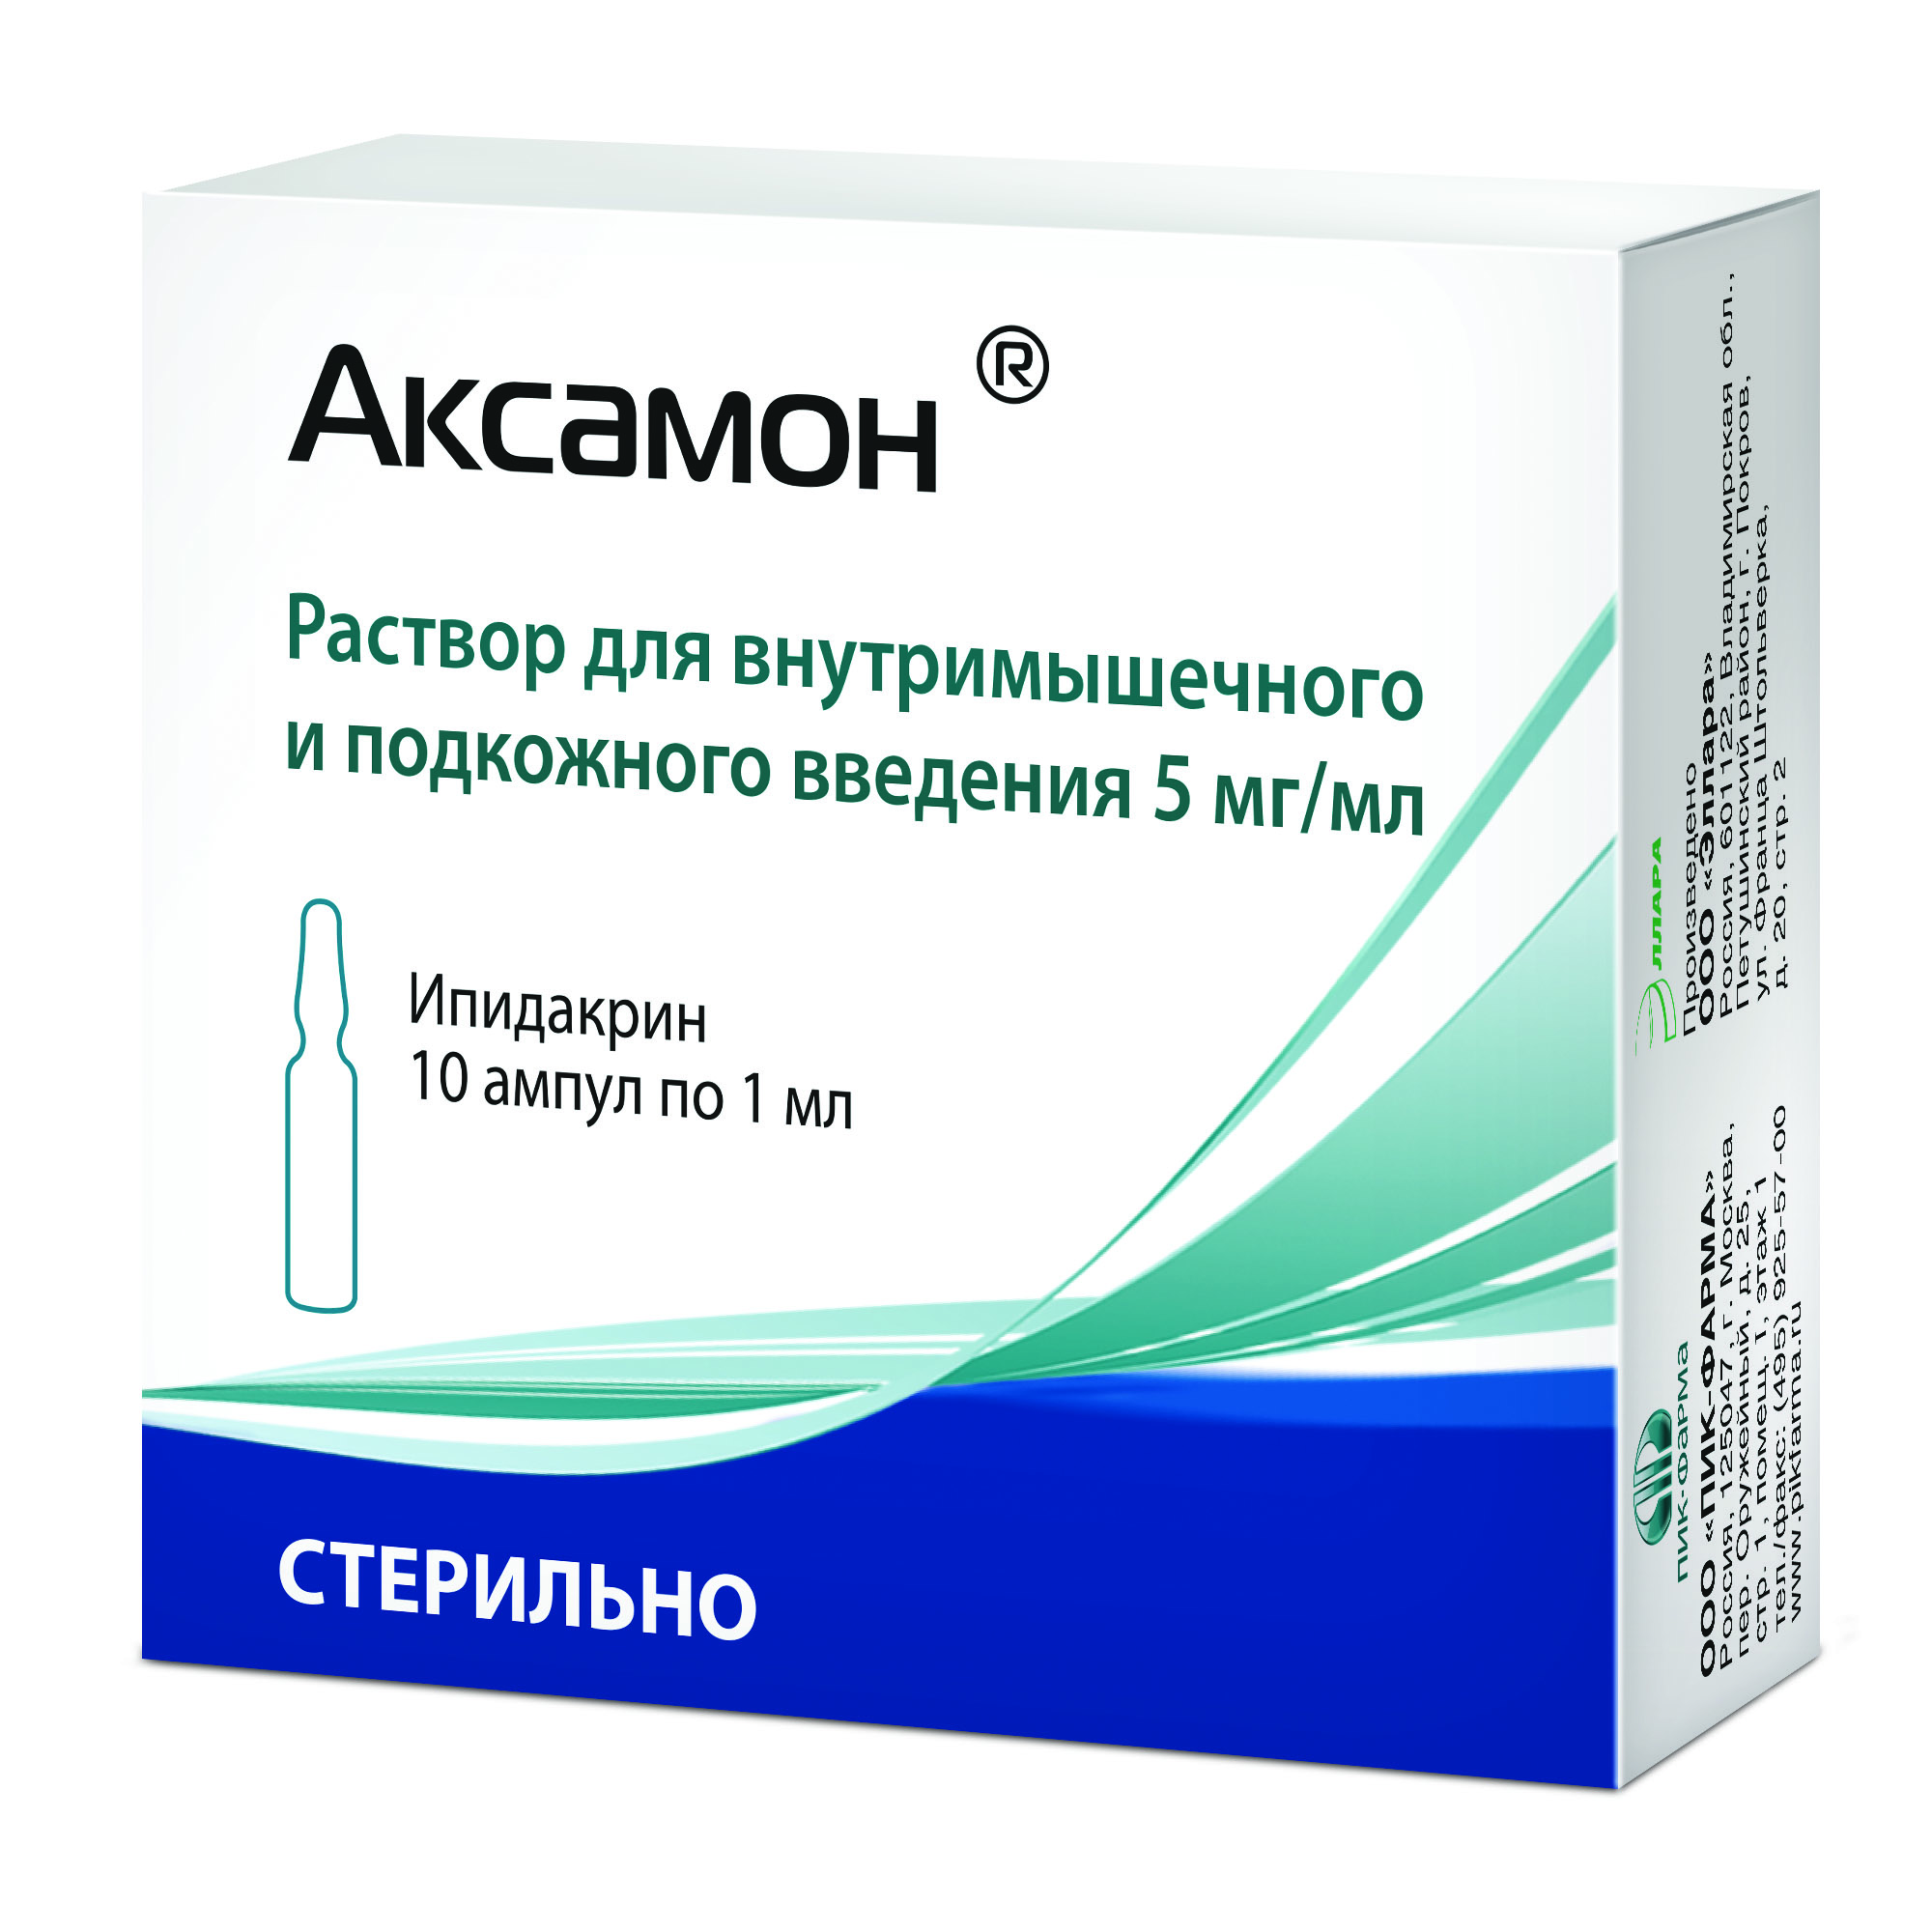 Аксамон 15 мг. Ипидакрин 15 мг. Аксамон уколы 15 мг. Аксамон 20 мг таблетки. Ипидакрин 5 мг таблетки.